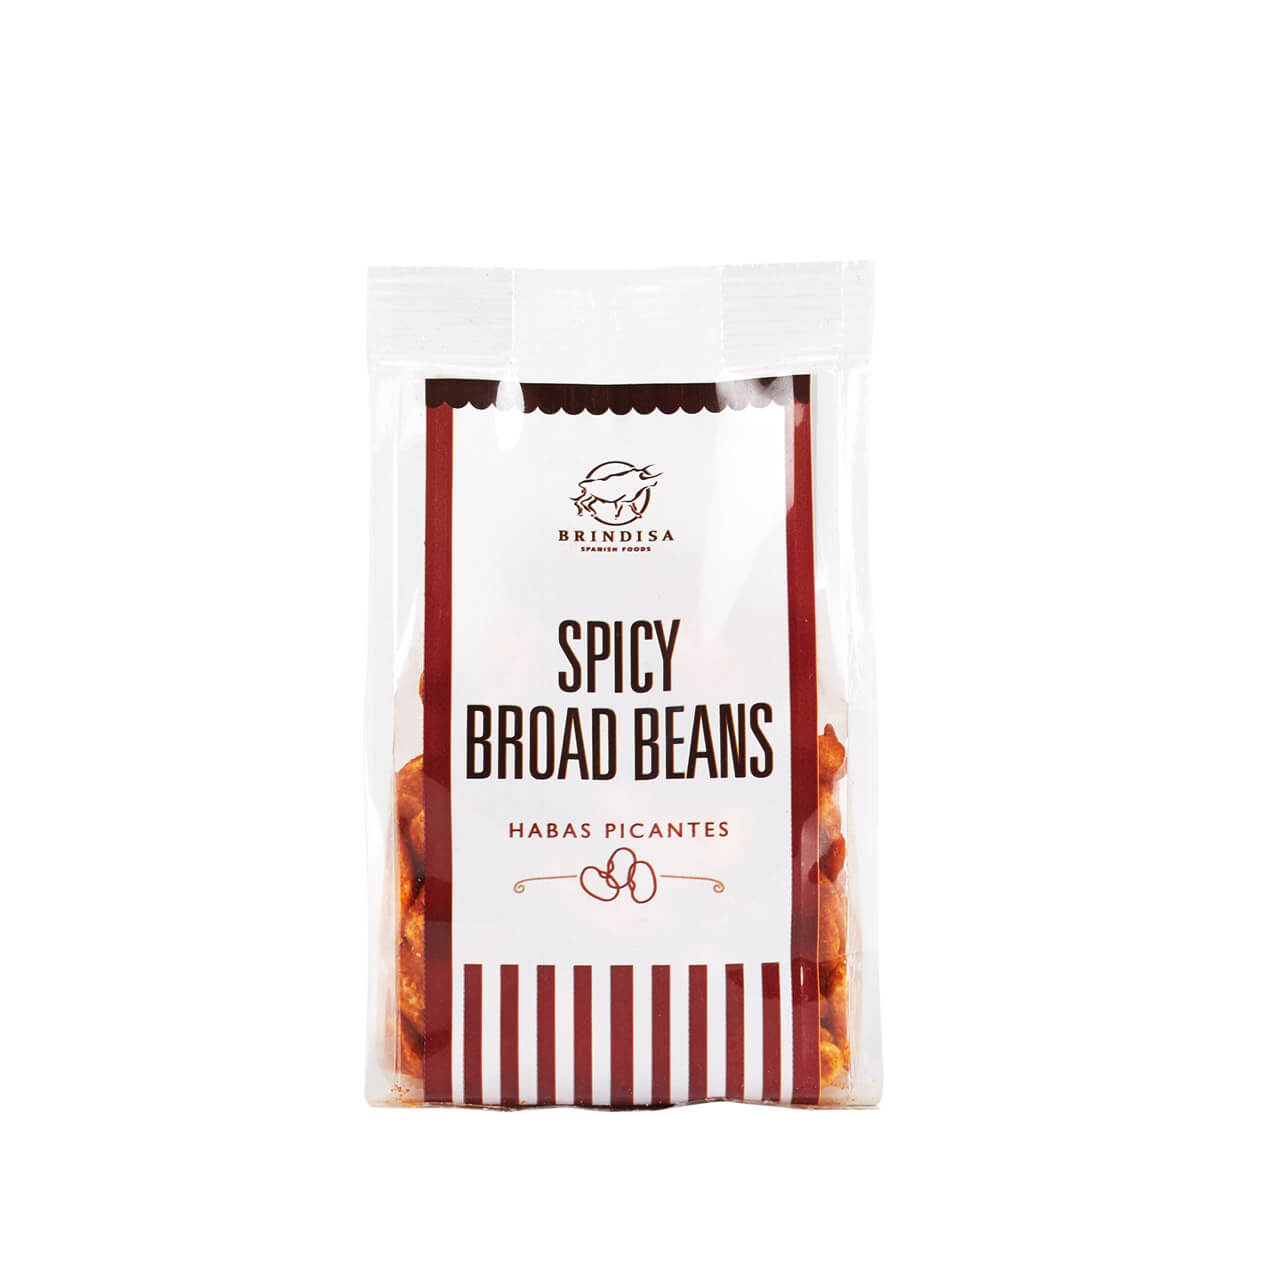 Brindisa Spicy Broad Beans Brindisa Spanish Foods